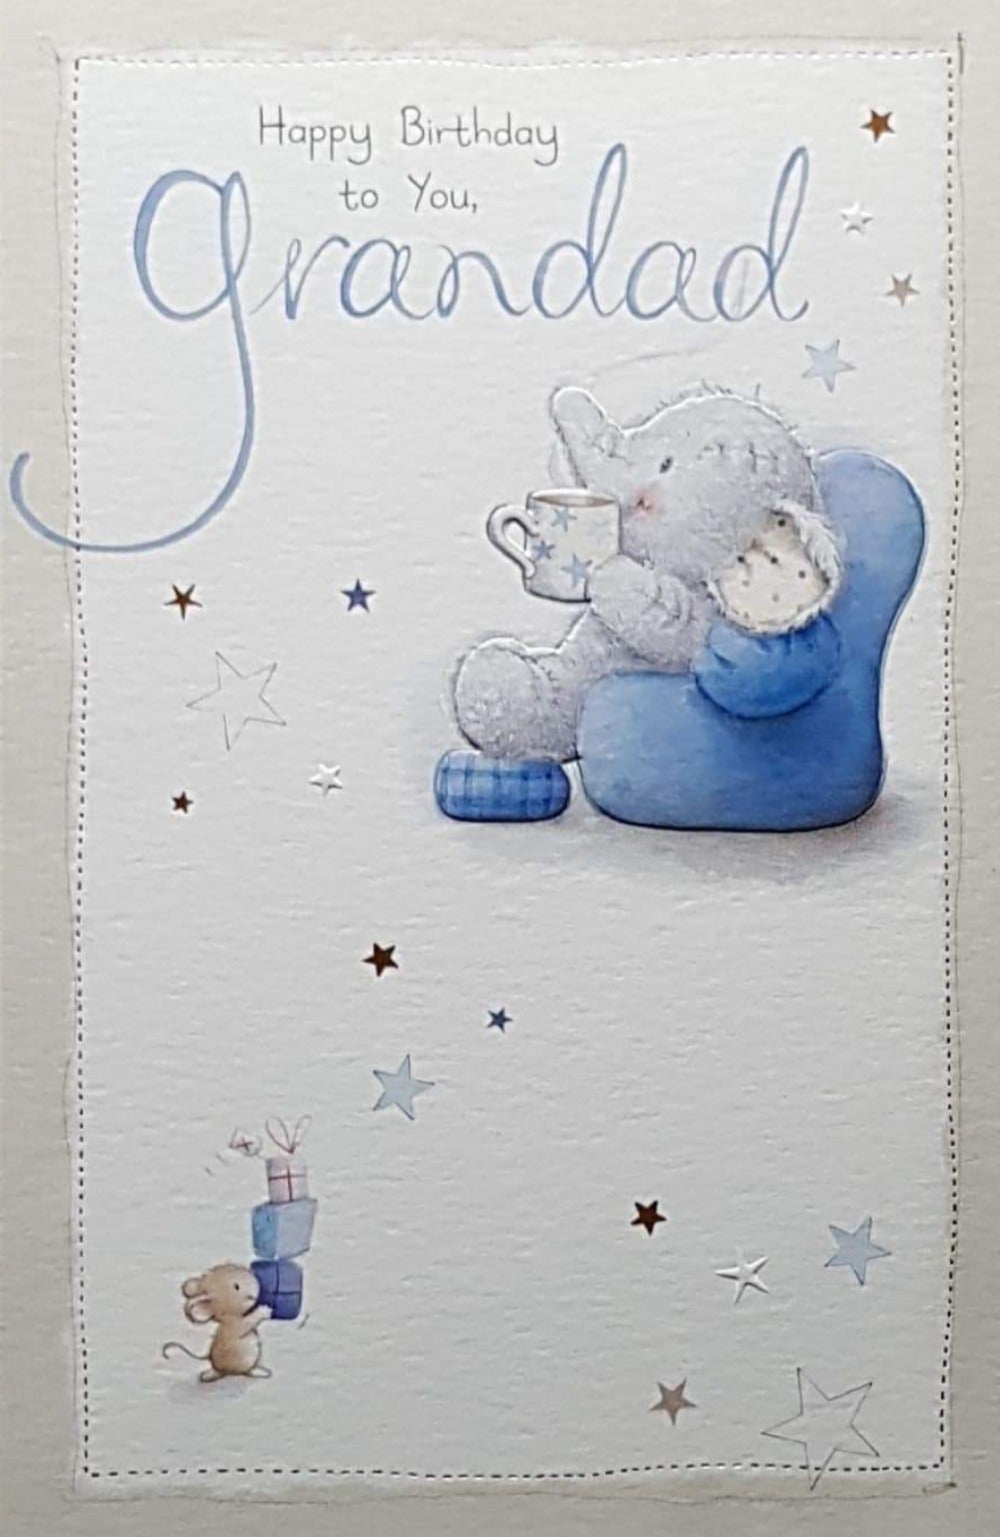 Birthday Card - Grandad / Elephant On A Couch